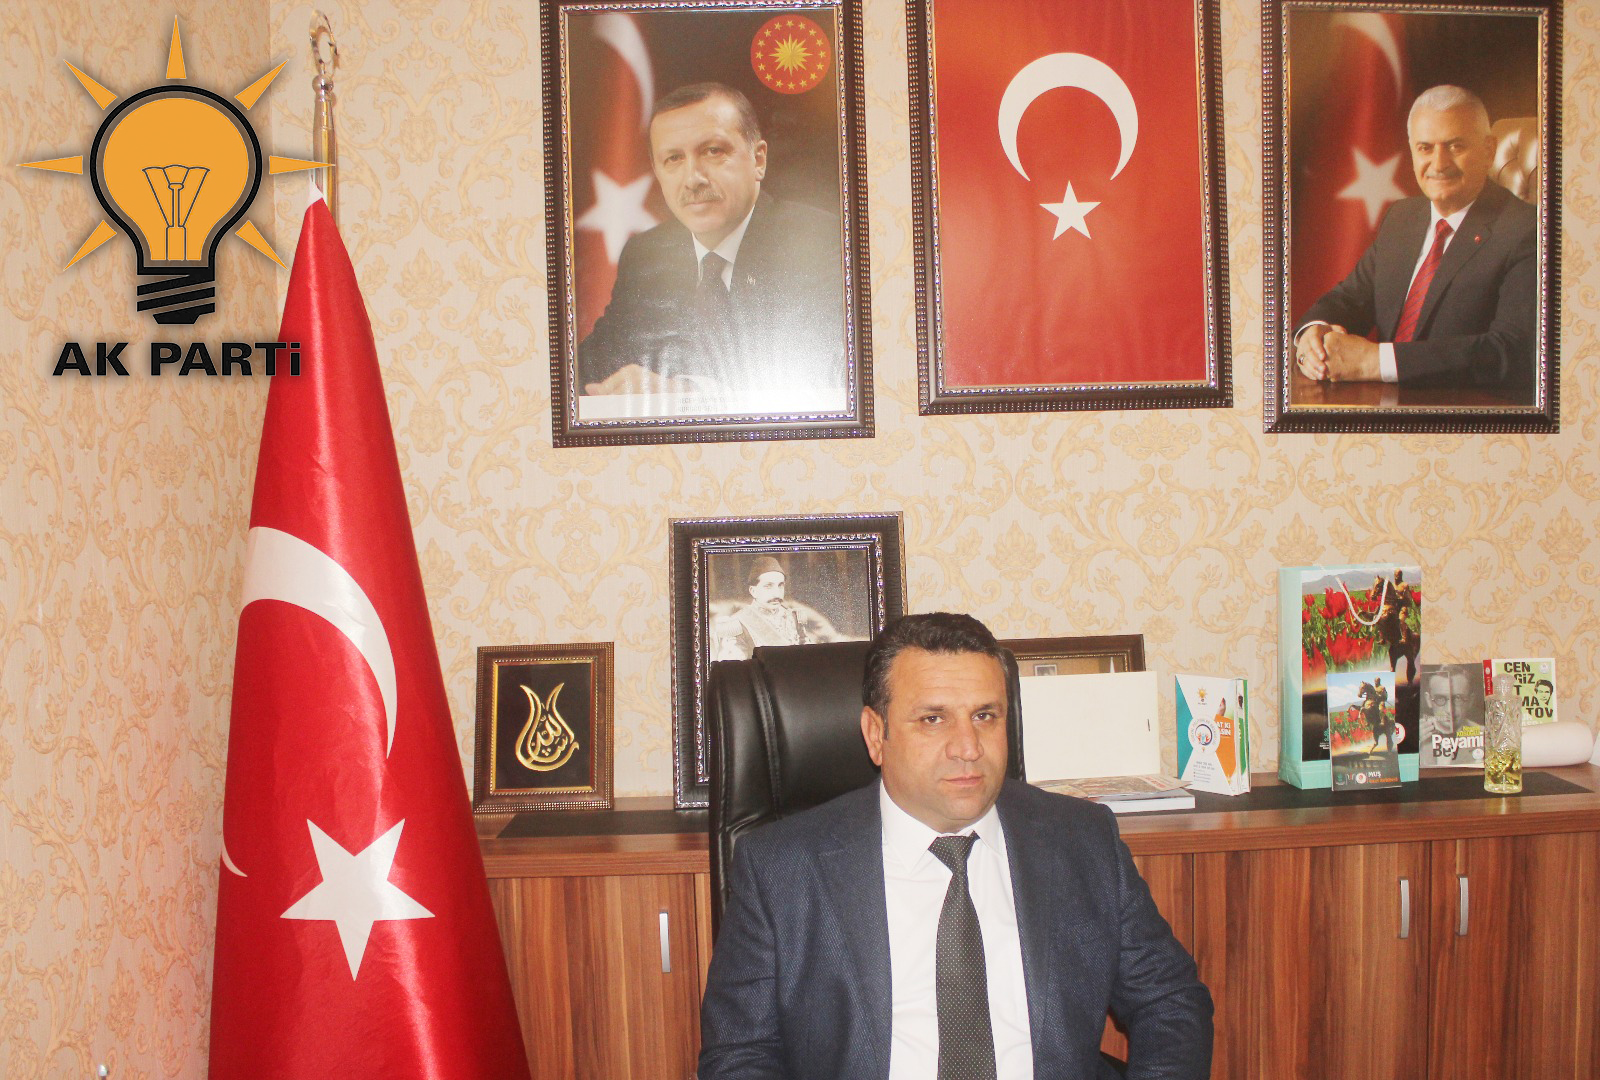 AK Parti İlçe Başkanı Mehmet Kurt; “Yeni Yılınız Kutlu Olsun”